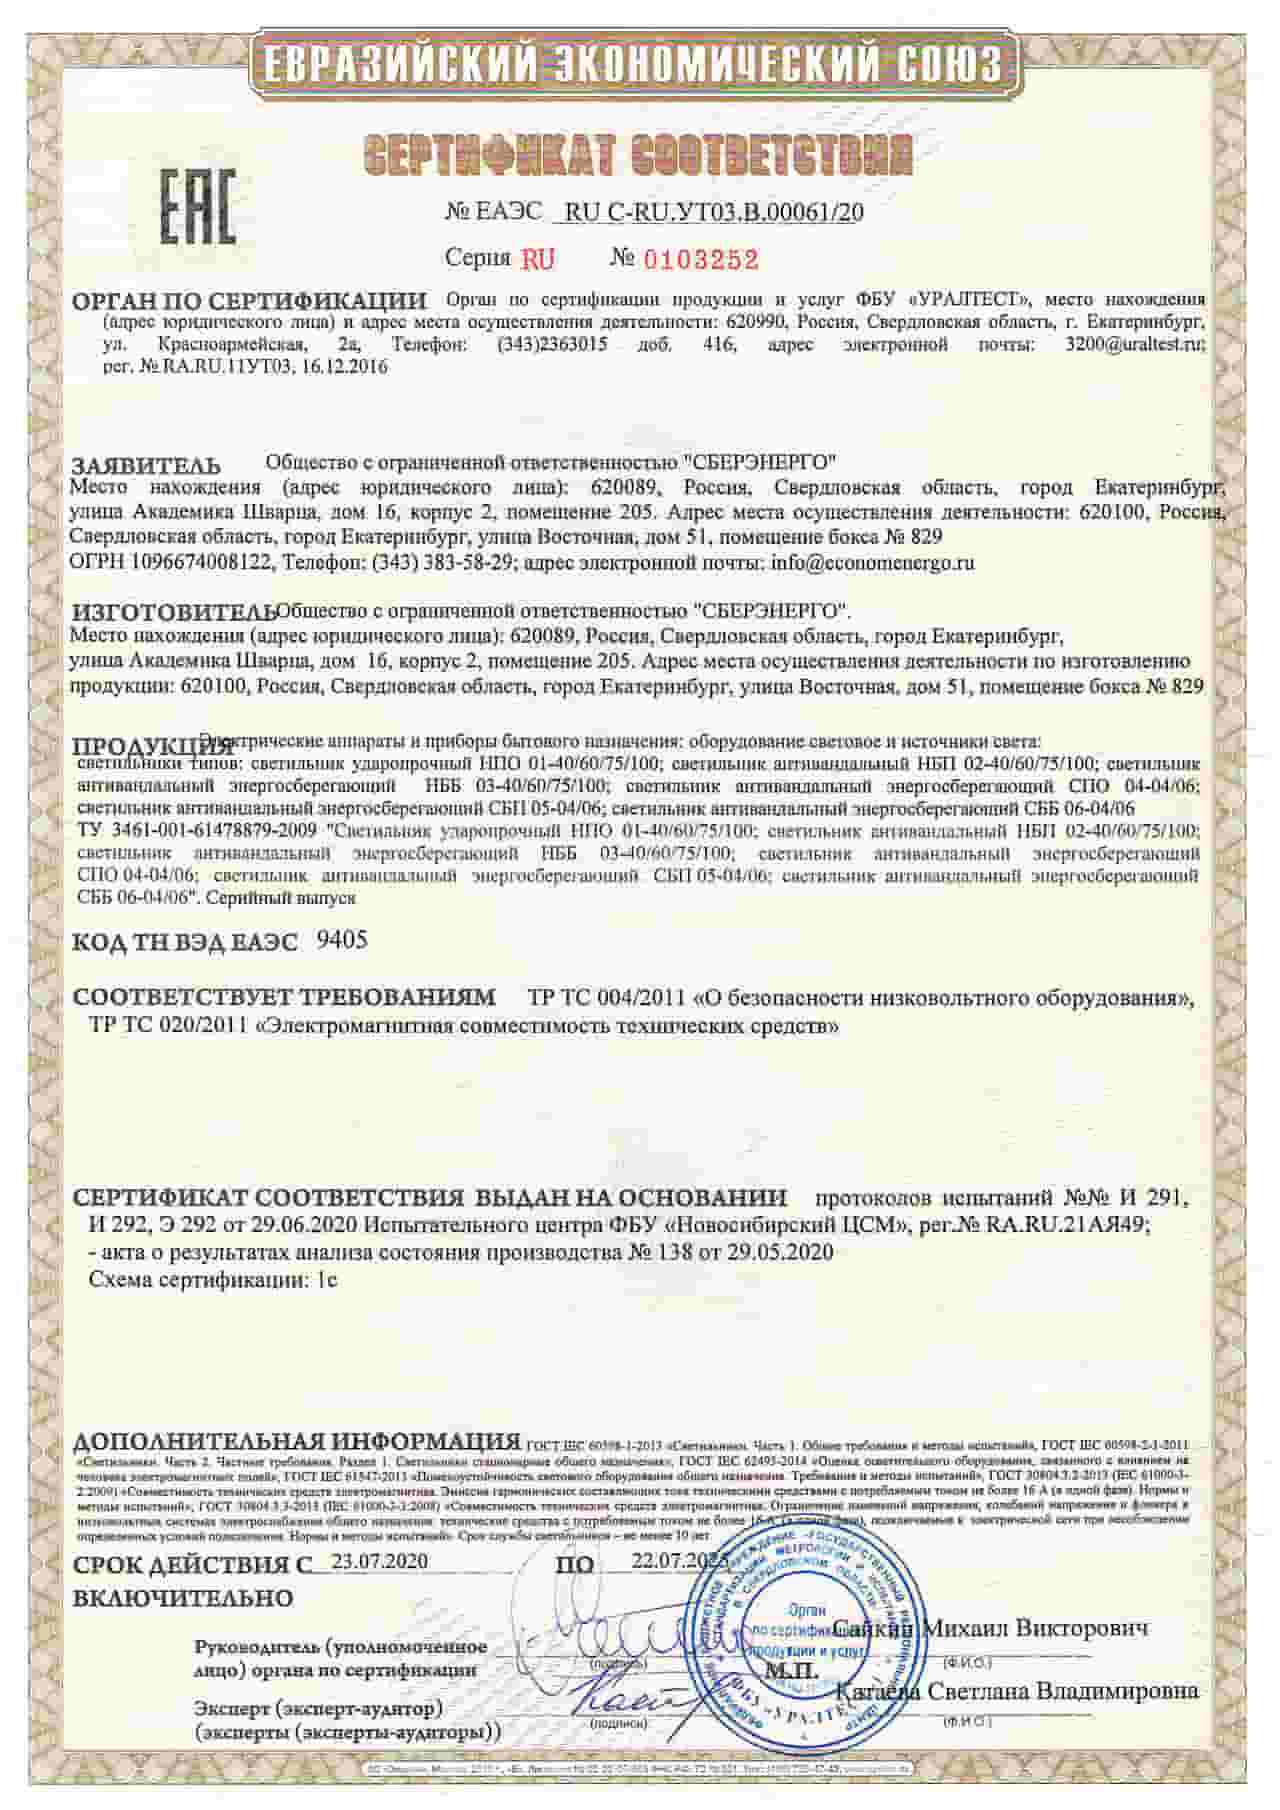 Сертификат светильников производителя СБЕРЭНЕРГО